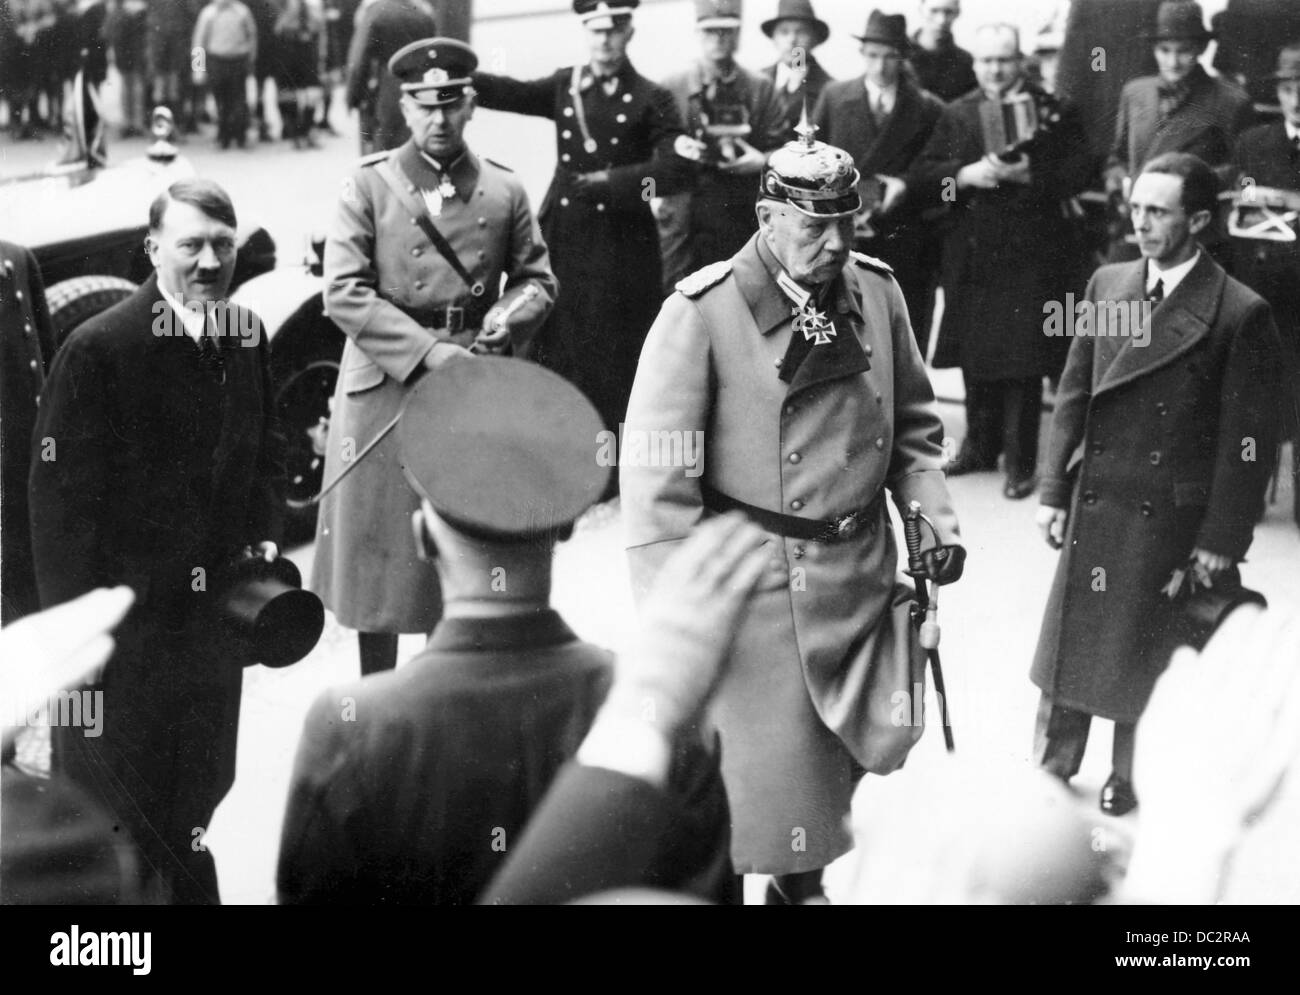 Le président du Reich Paul von Hindenburg marche avec le chancelier du Reich Adolf Hitler et le ministre du Reich Joseph Goebbels (r) vers l'Opéra à Berlin, en Allemagne, à l'occasion de la Journée de commémoration des héros, le 25 février 1934. Fotoarchiv für Zeitgeschichte Banque D'Images